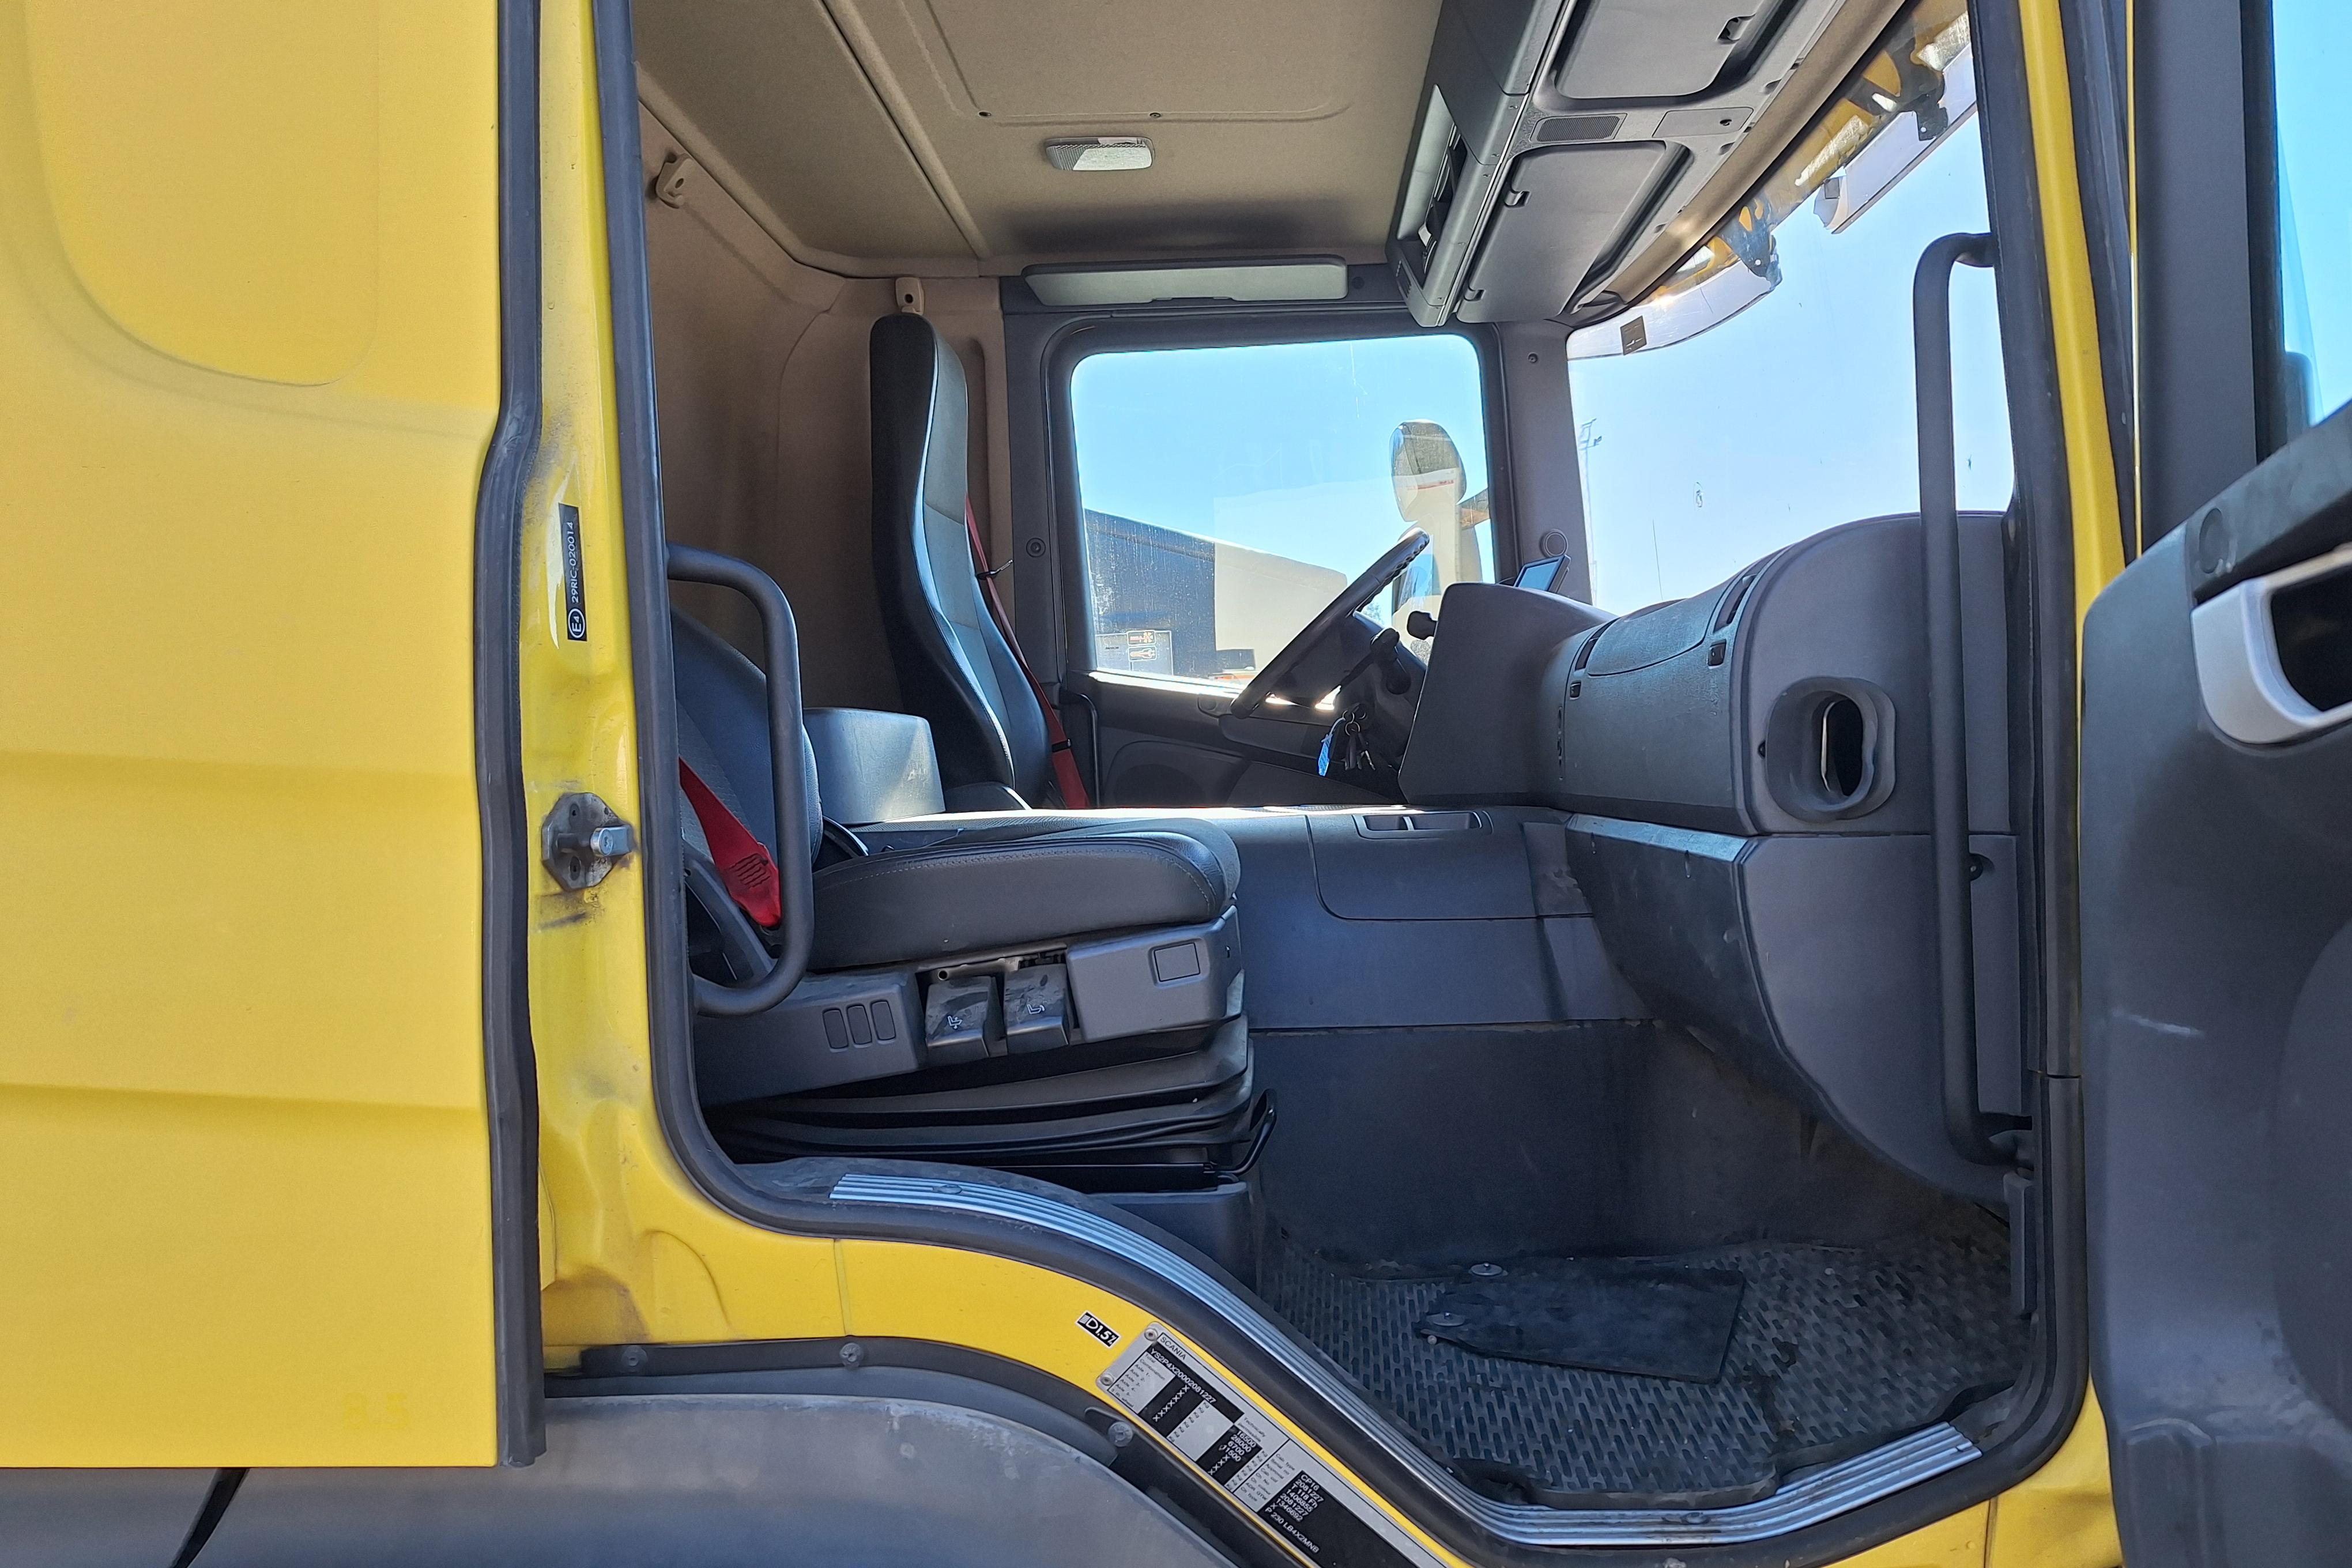 Scania P230 - 406 071 km - Automatyczna - żółty - 2013